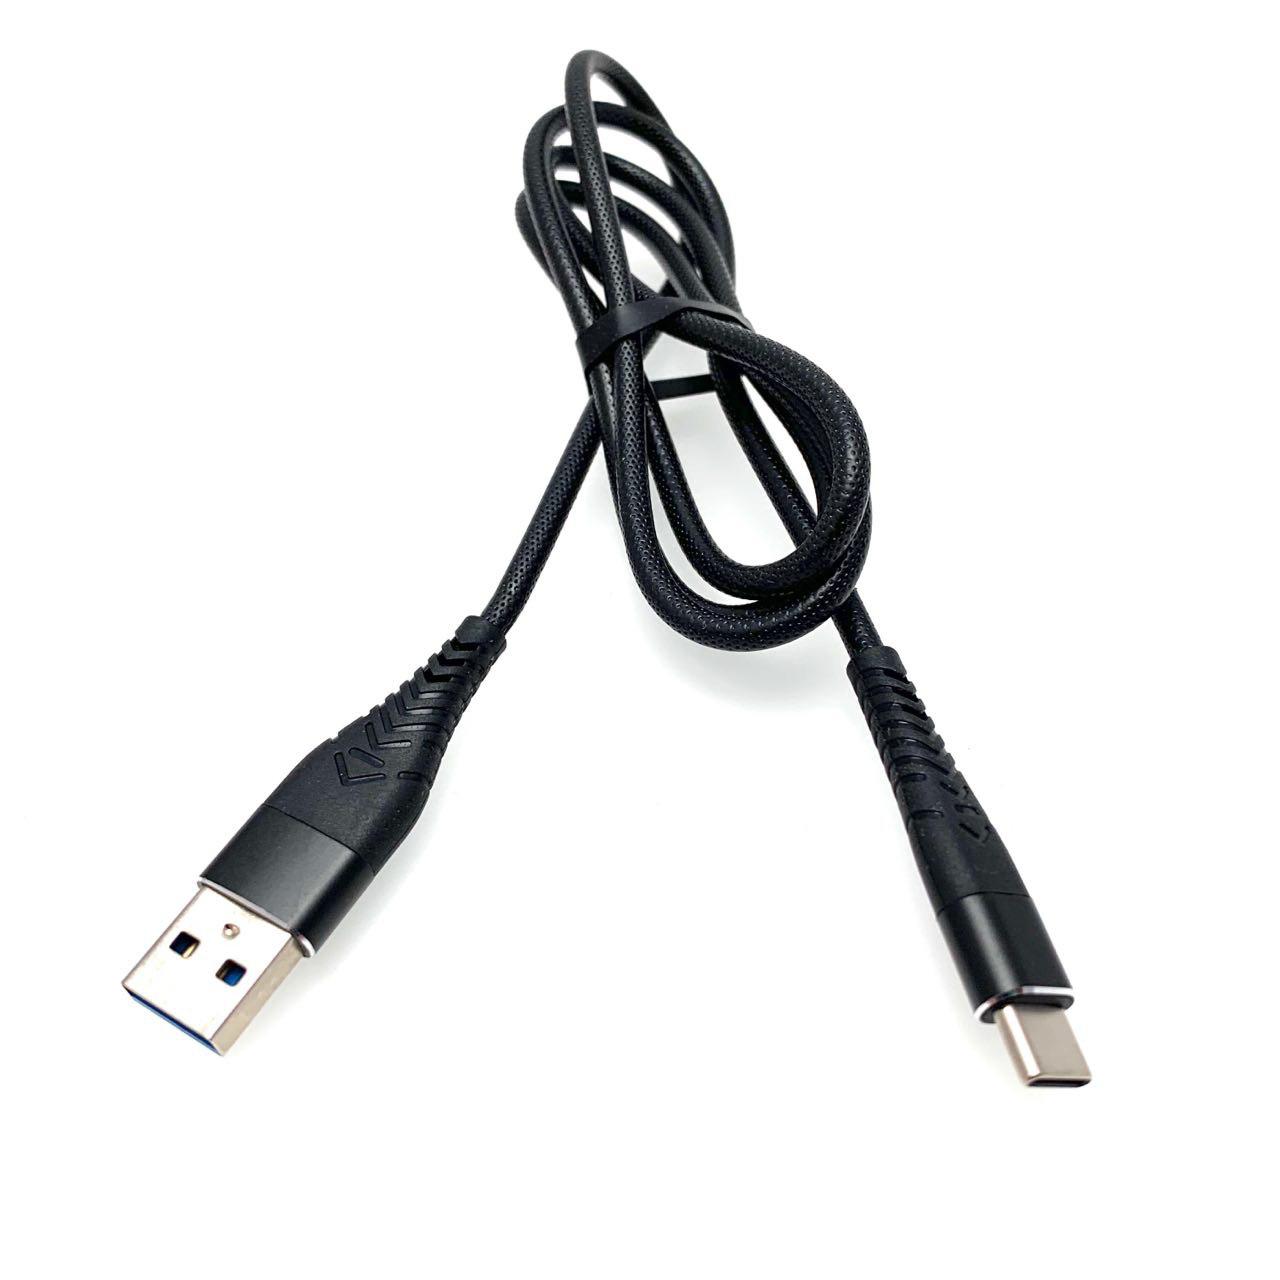 USB Дата-кабель "R18" Type-C USB 3.0 силиконовый эластичный, морозоустойчивый, 1 метр чёрного цвета, синие контакты.